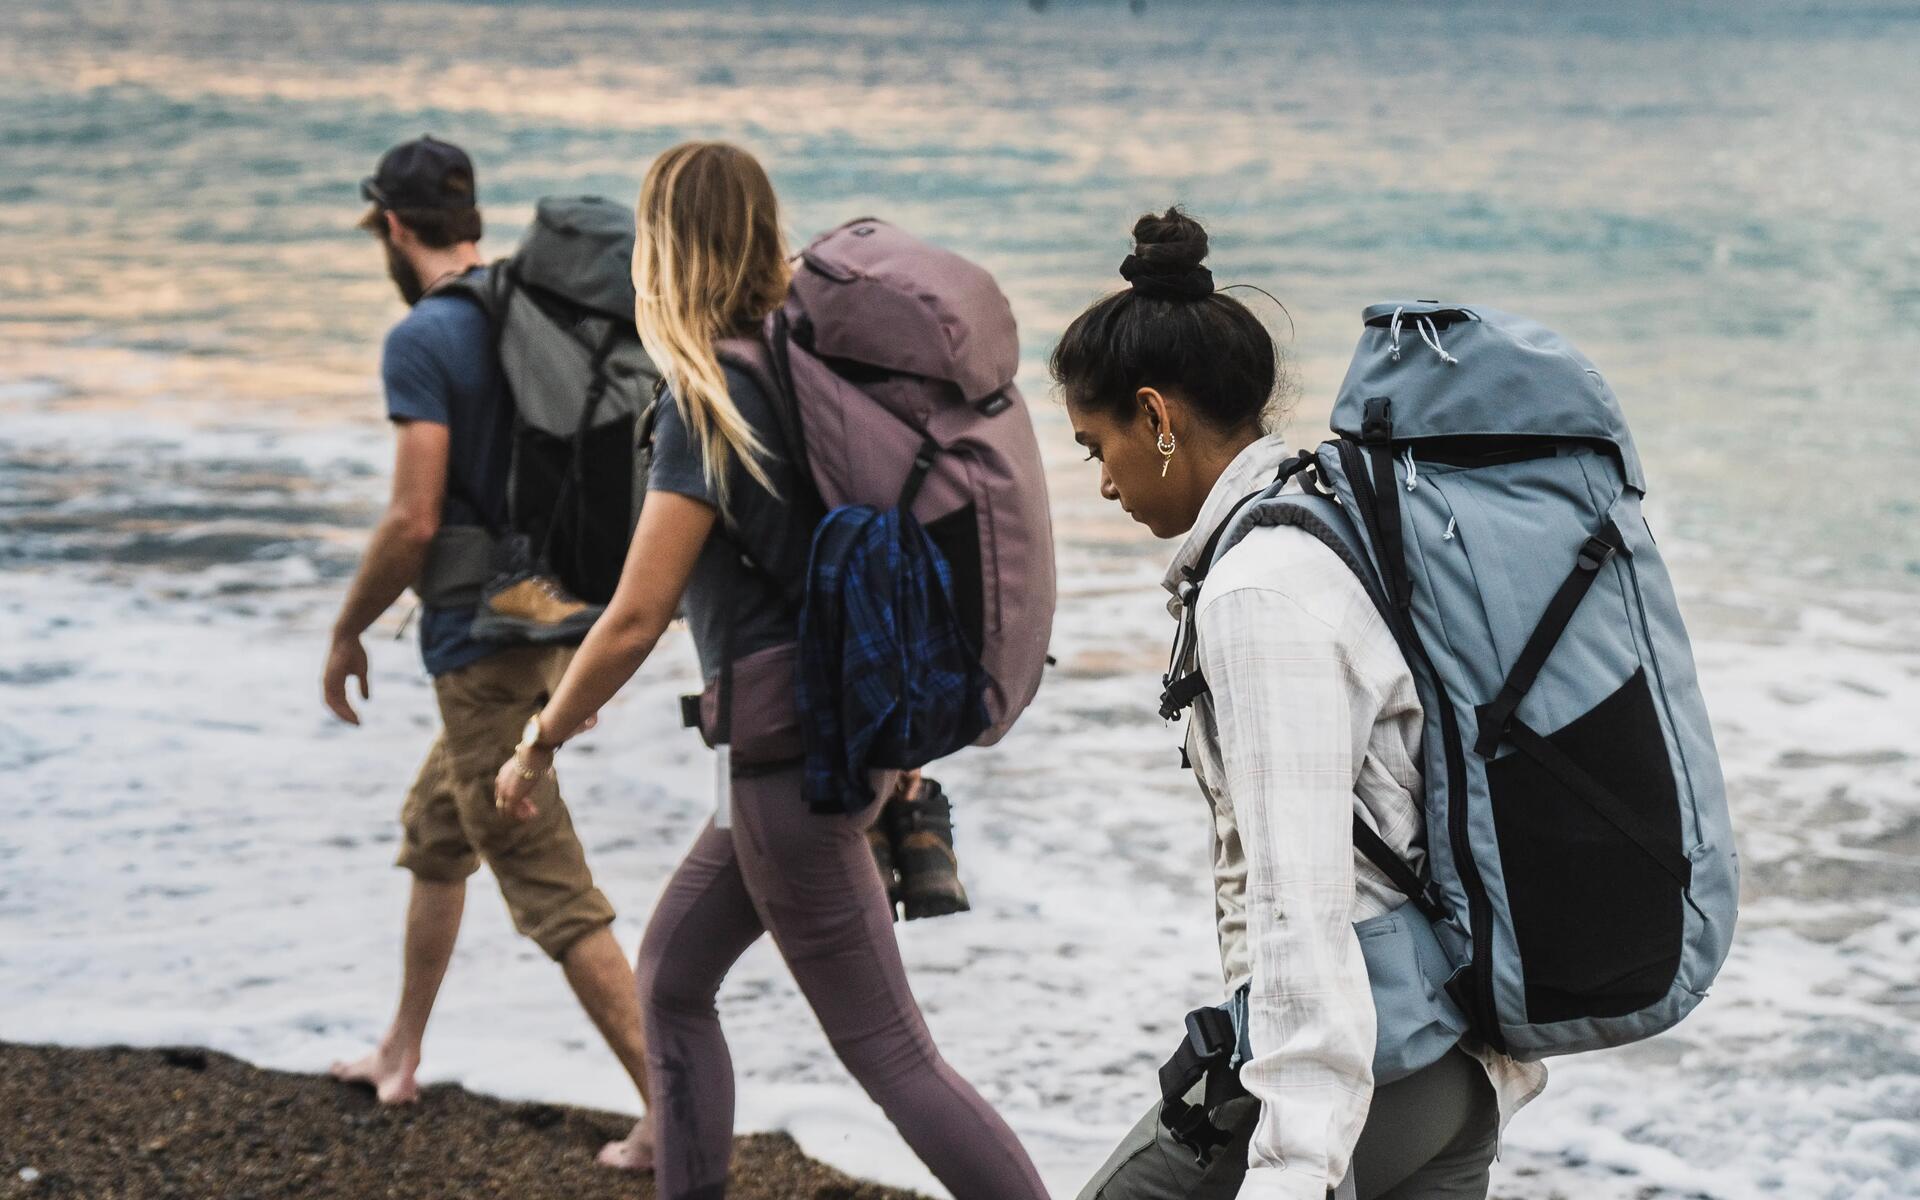 kobiety i mężczyzna idący po plaży z plecakami turystycznymi na plecach